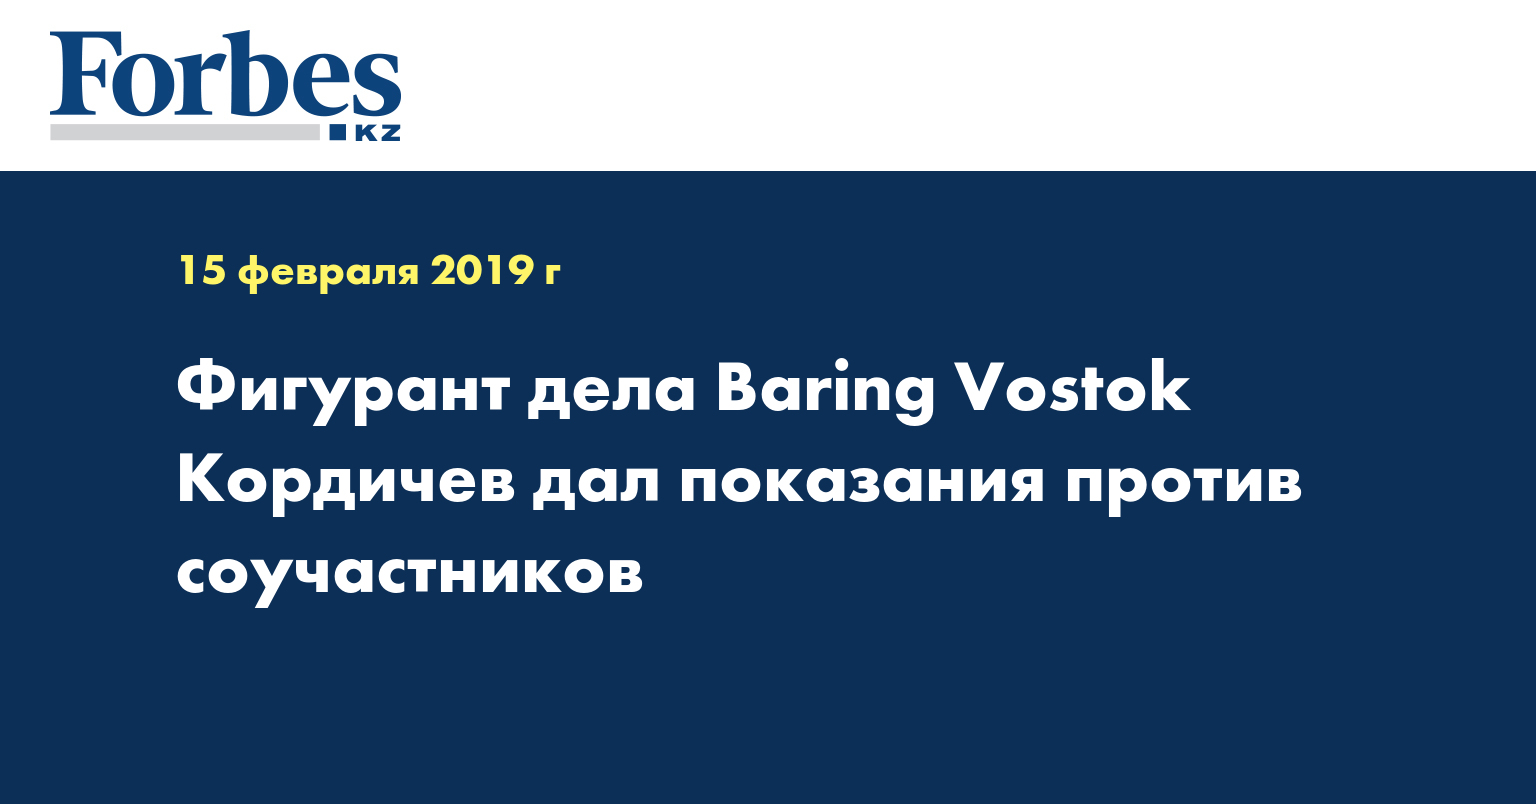 Фигурант дела Baring Vostok Кордичев дал показания против соучастников